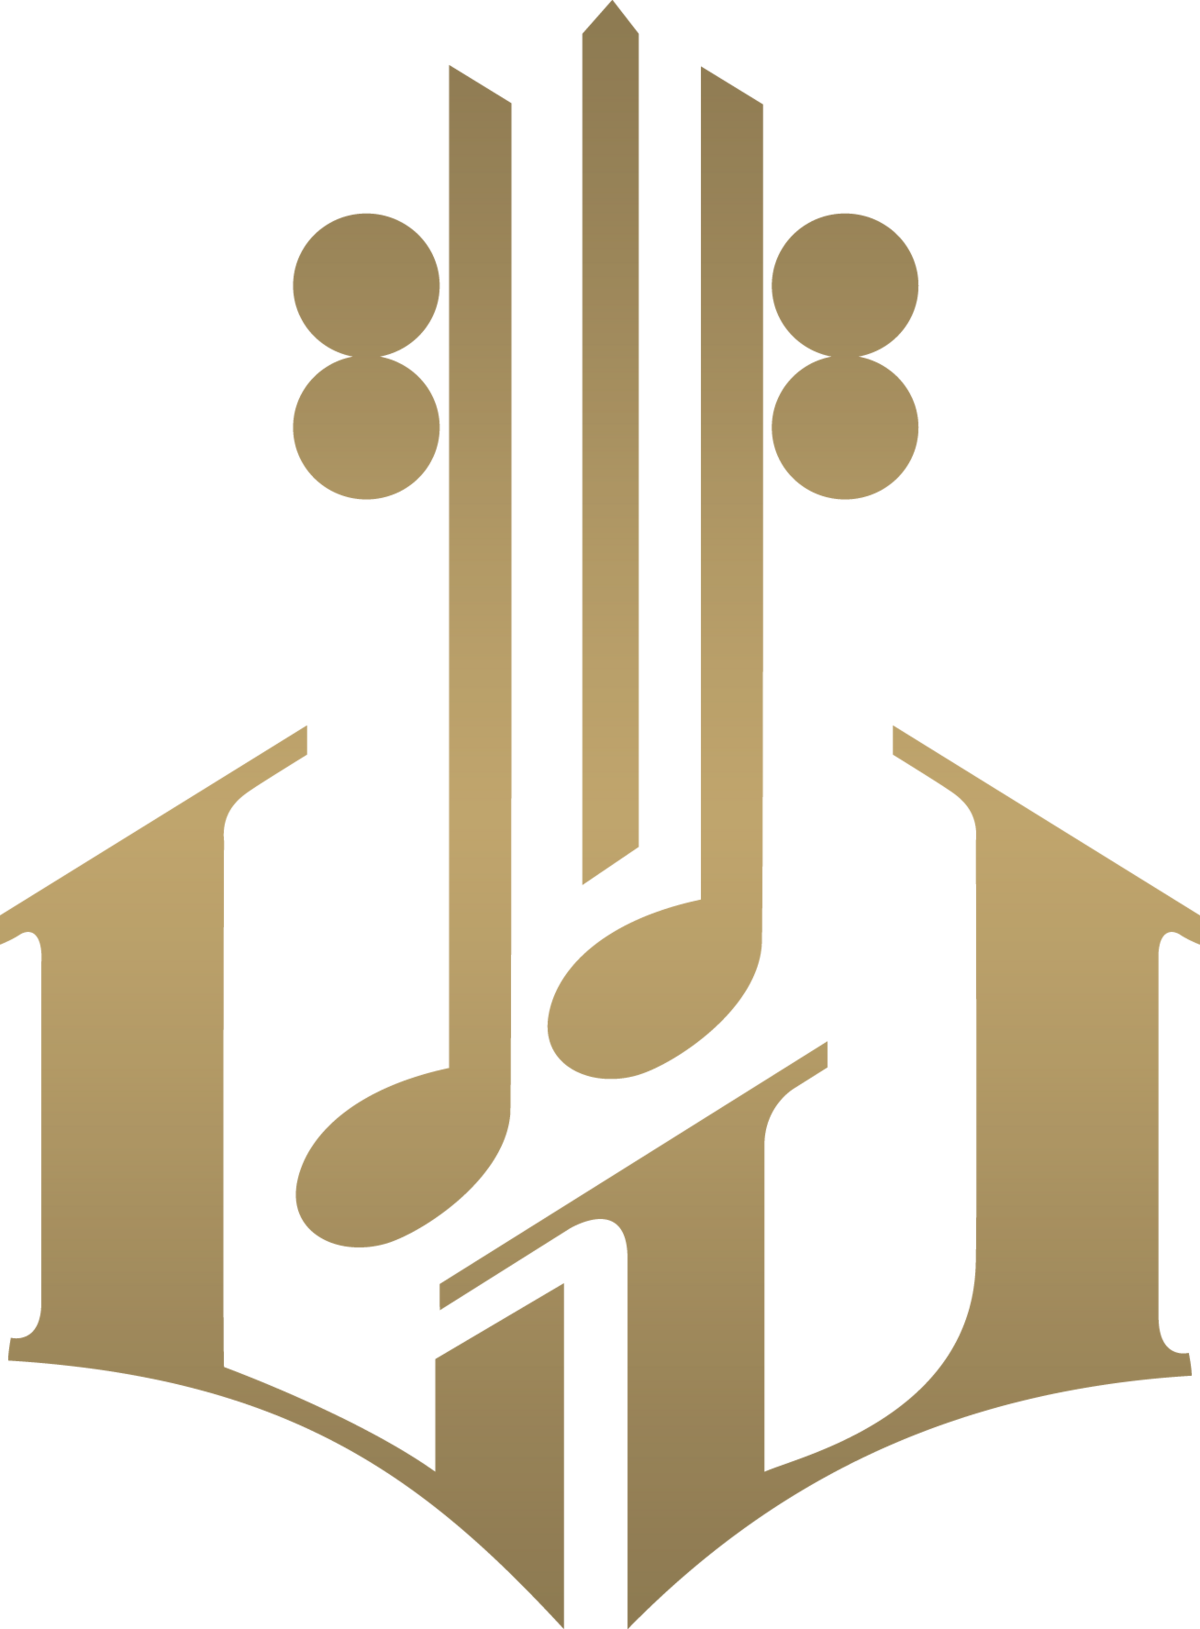 File:Louis Vuitton LV logo.png - Wikipedia